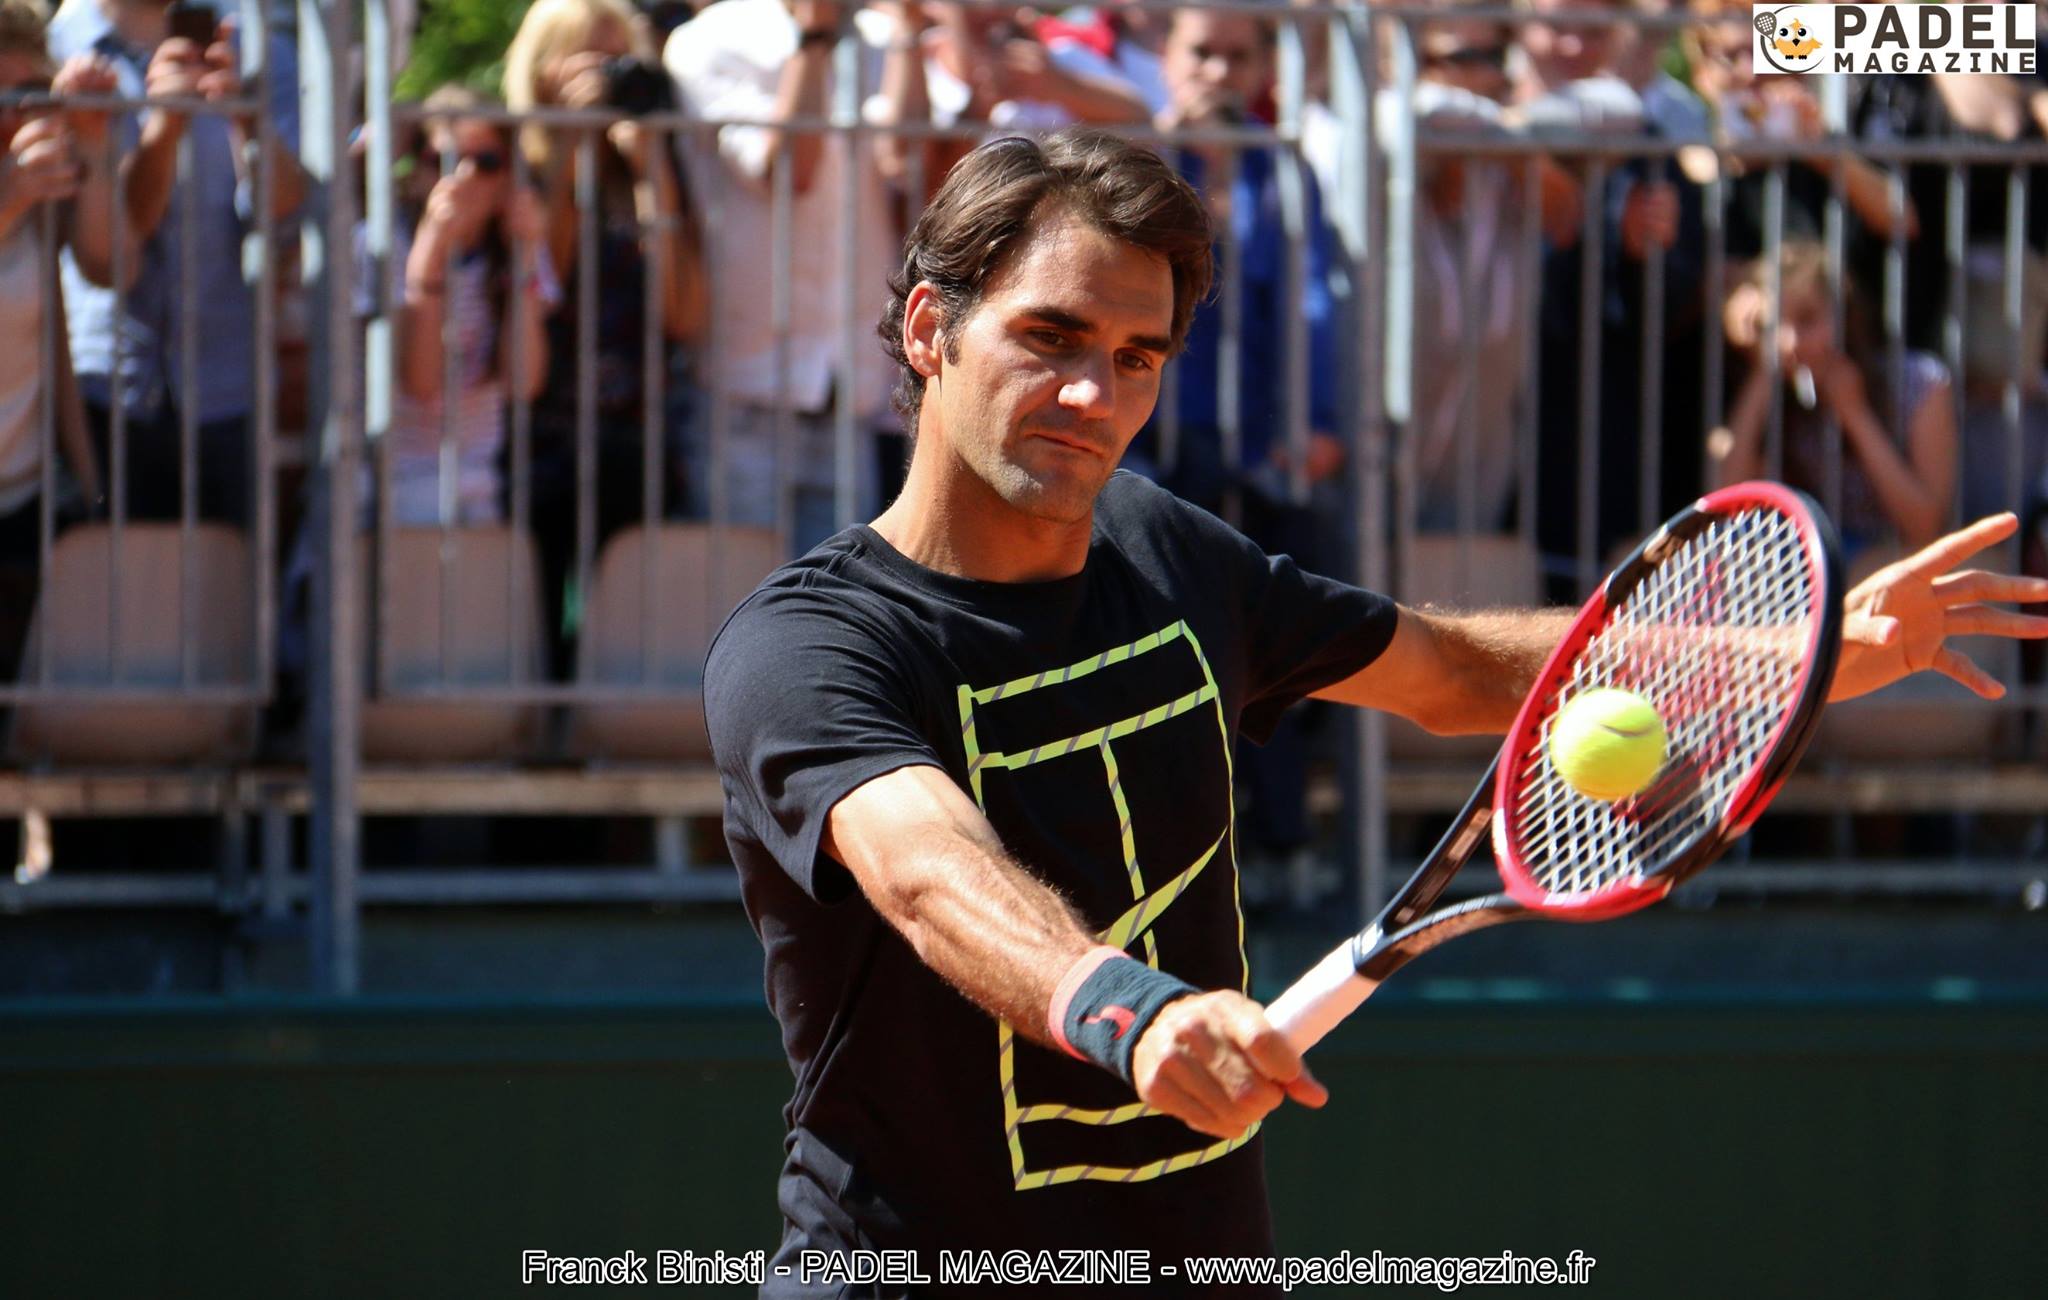 Roger Federer at padel : sen czy przyszła rzeczywistość?